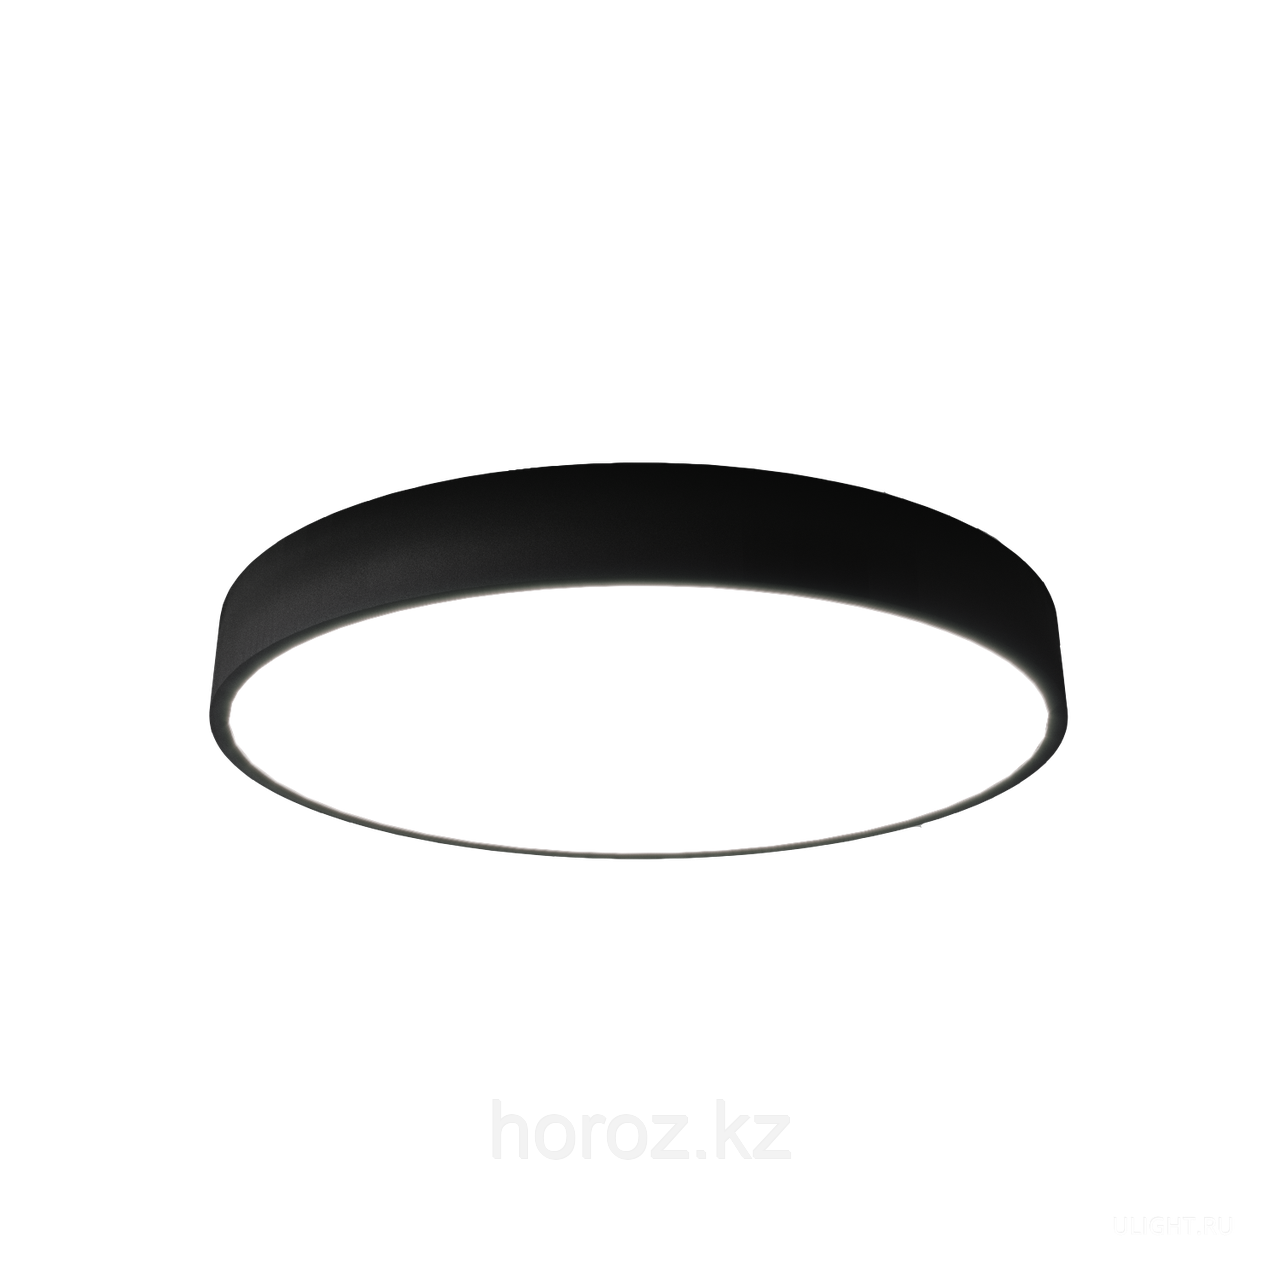 Потолочный дизайнерский светильник круглый LED 24 W, фото 1